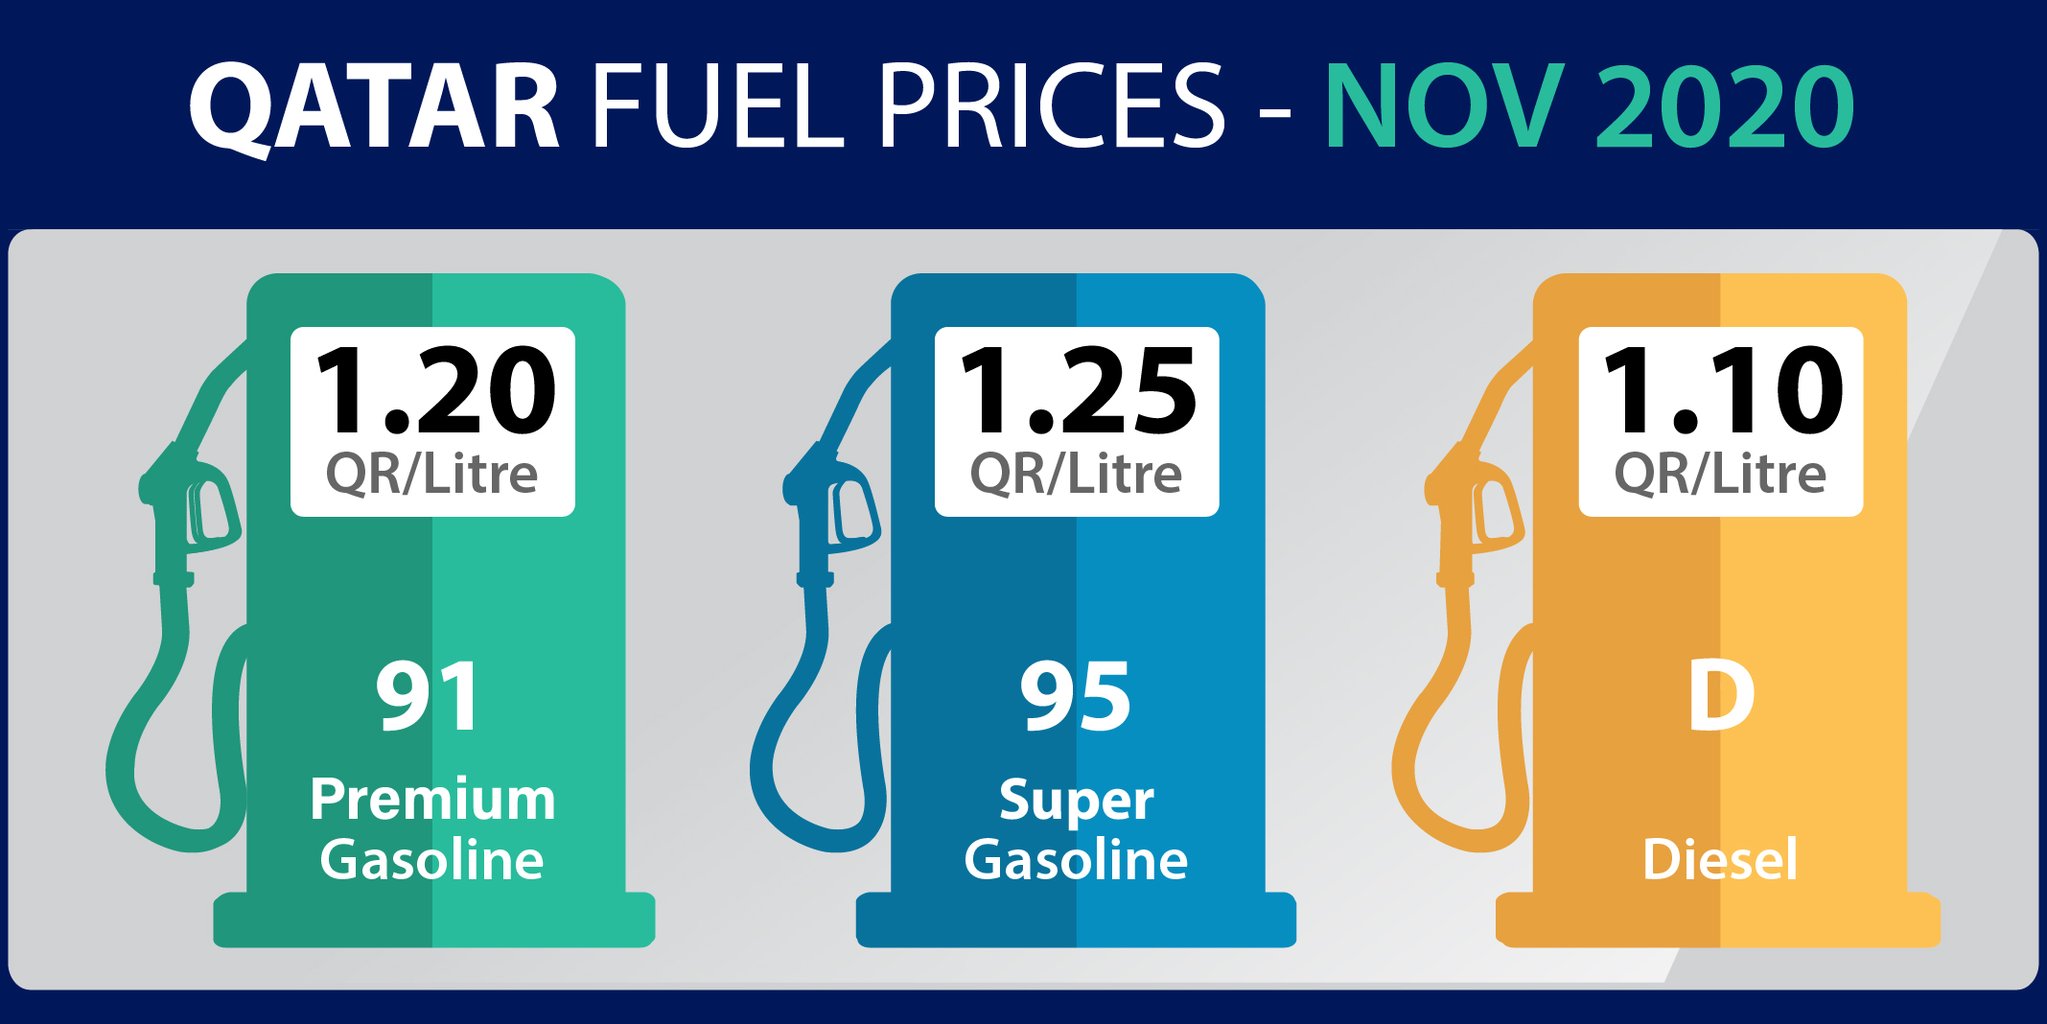 Qatar Petroleum reduces fuel prices in November